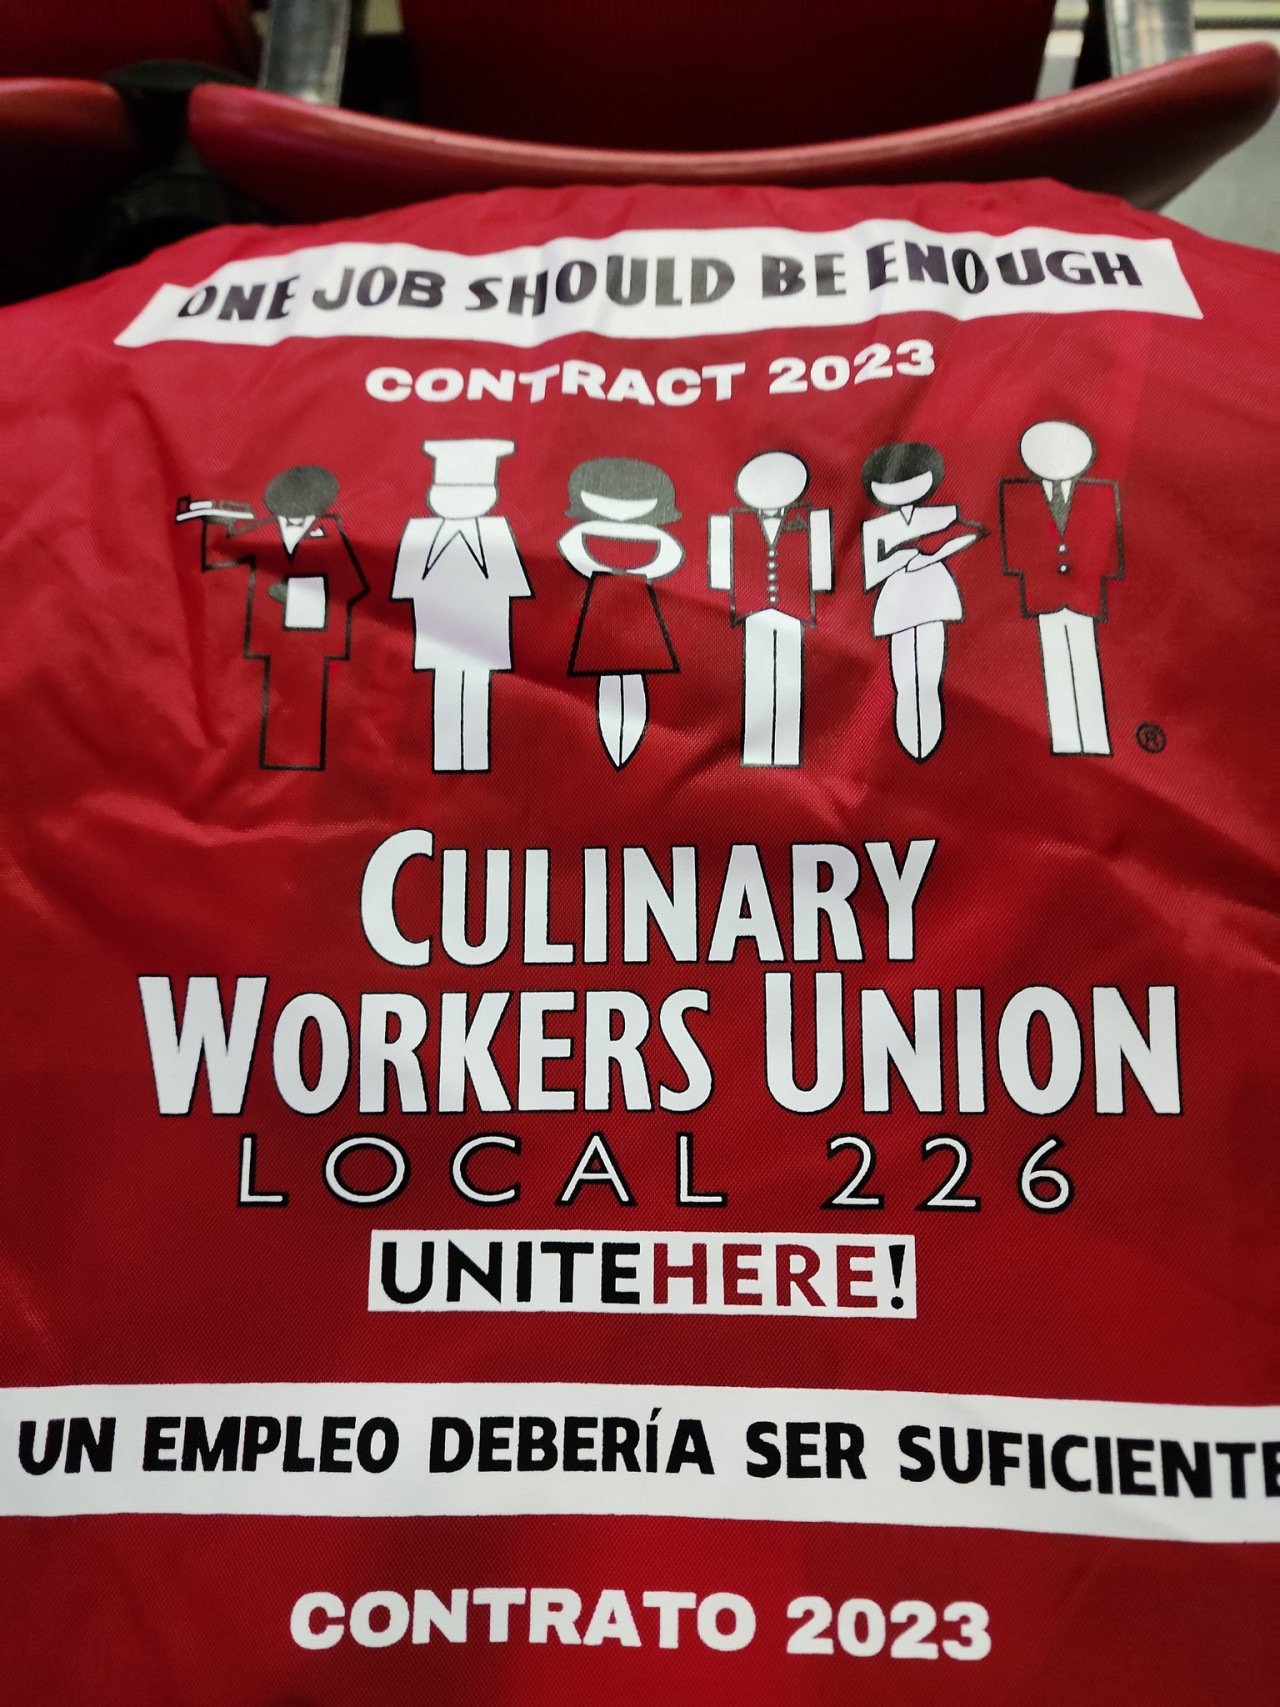 Remera del sindicato de trabajadores gastronómicos de EEUU. Foto: Twitter.